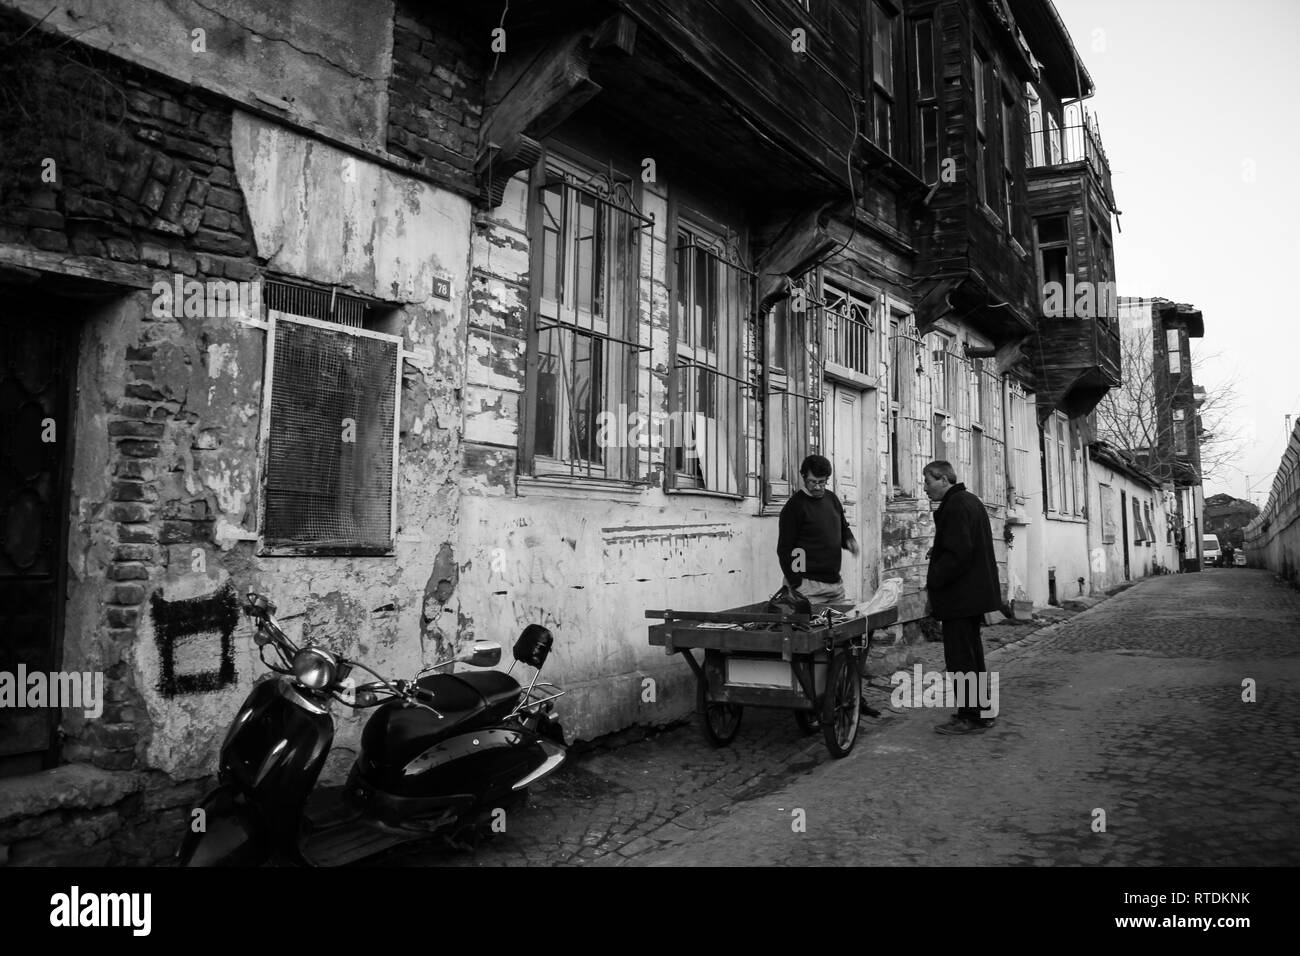 Cankurtaran, Fatih, Istanbul / Turquie - le 26 décembre 2012 : une rue de la vieille ville d'Istanbul, Cankurtaran Banque D'Images